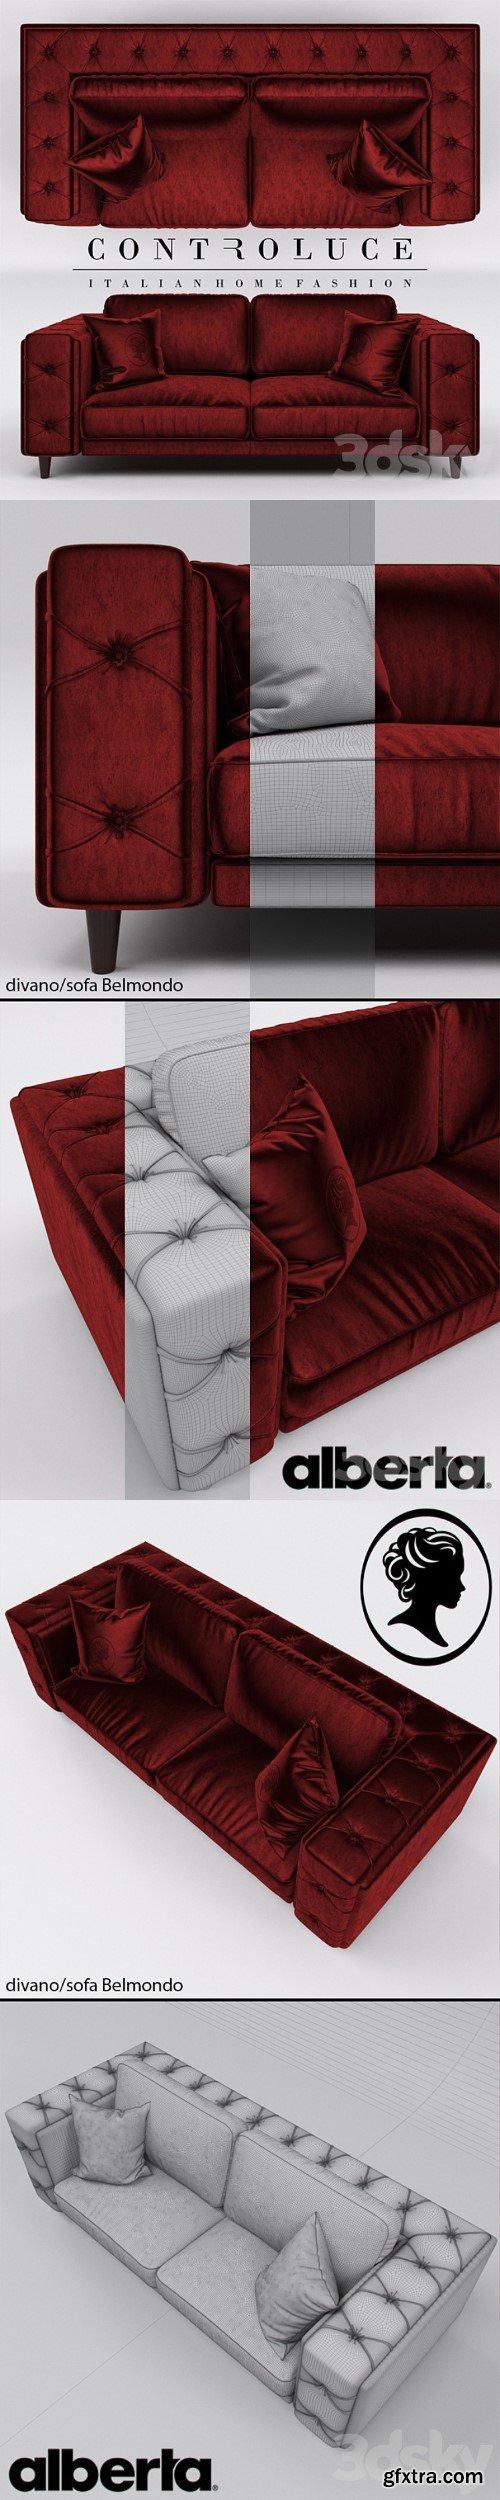 Alberta Salotti / Controluce / Belmondo. sofa